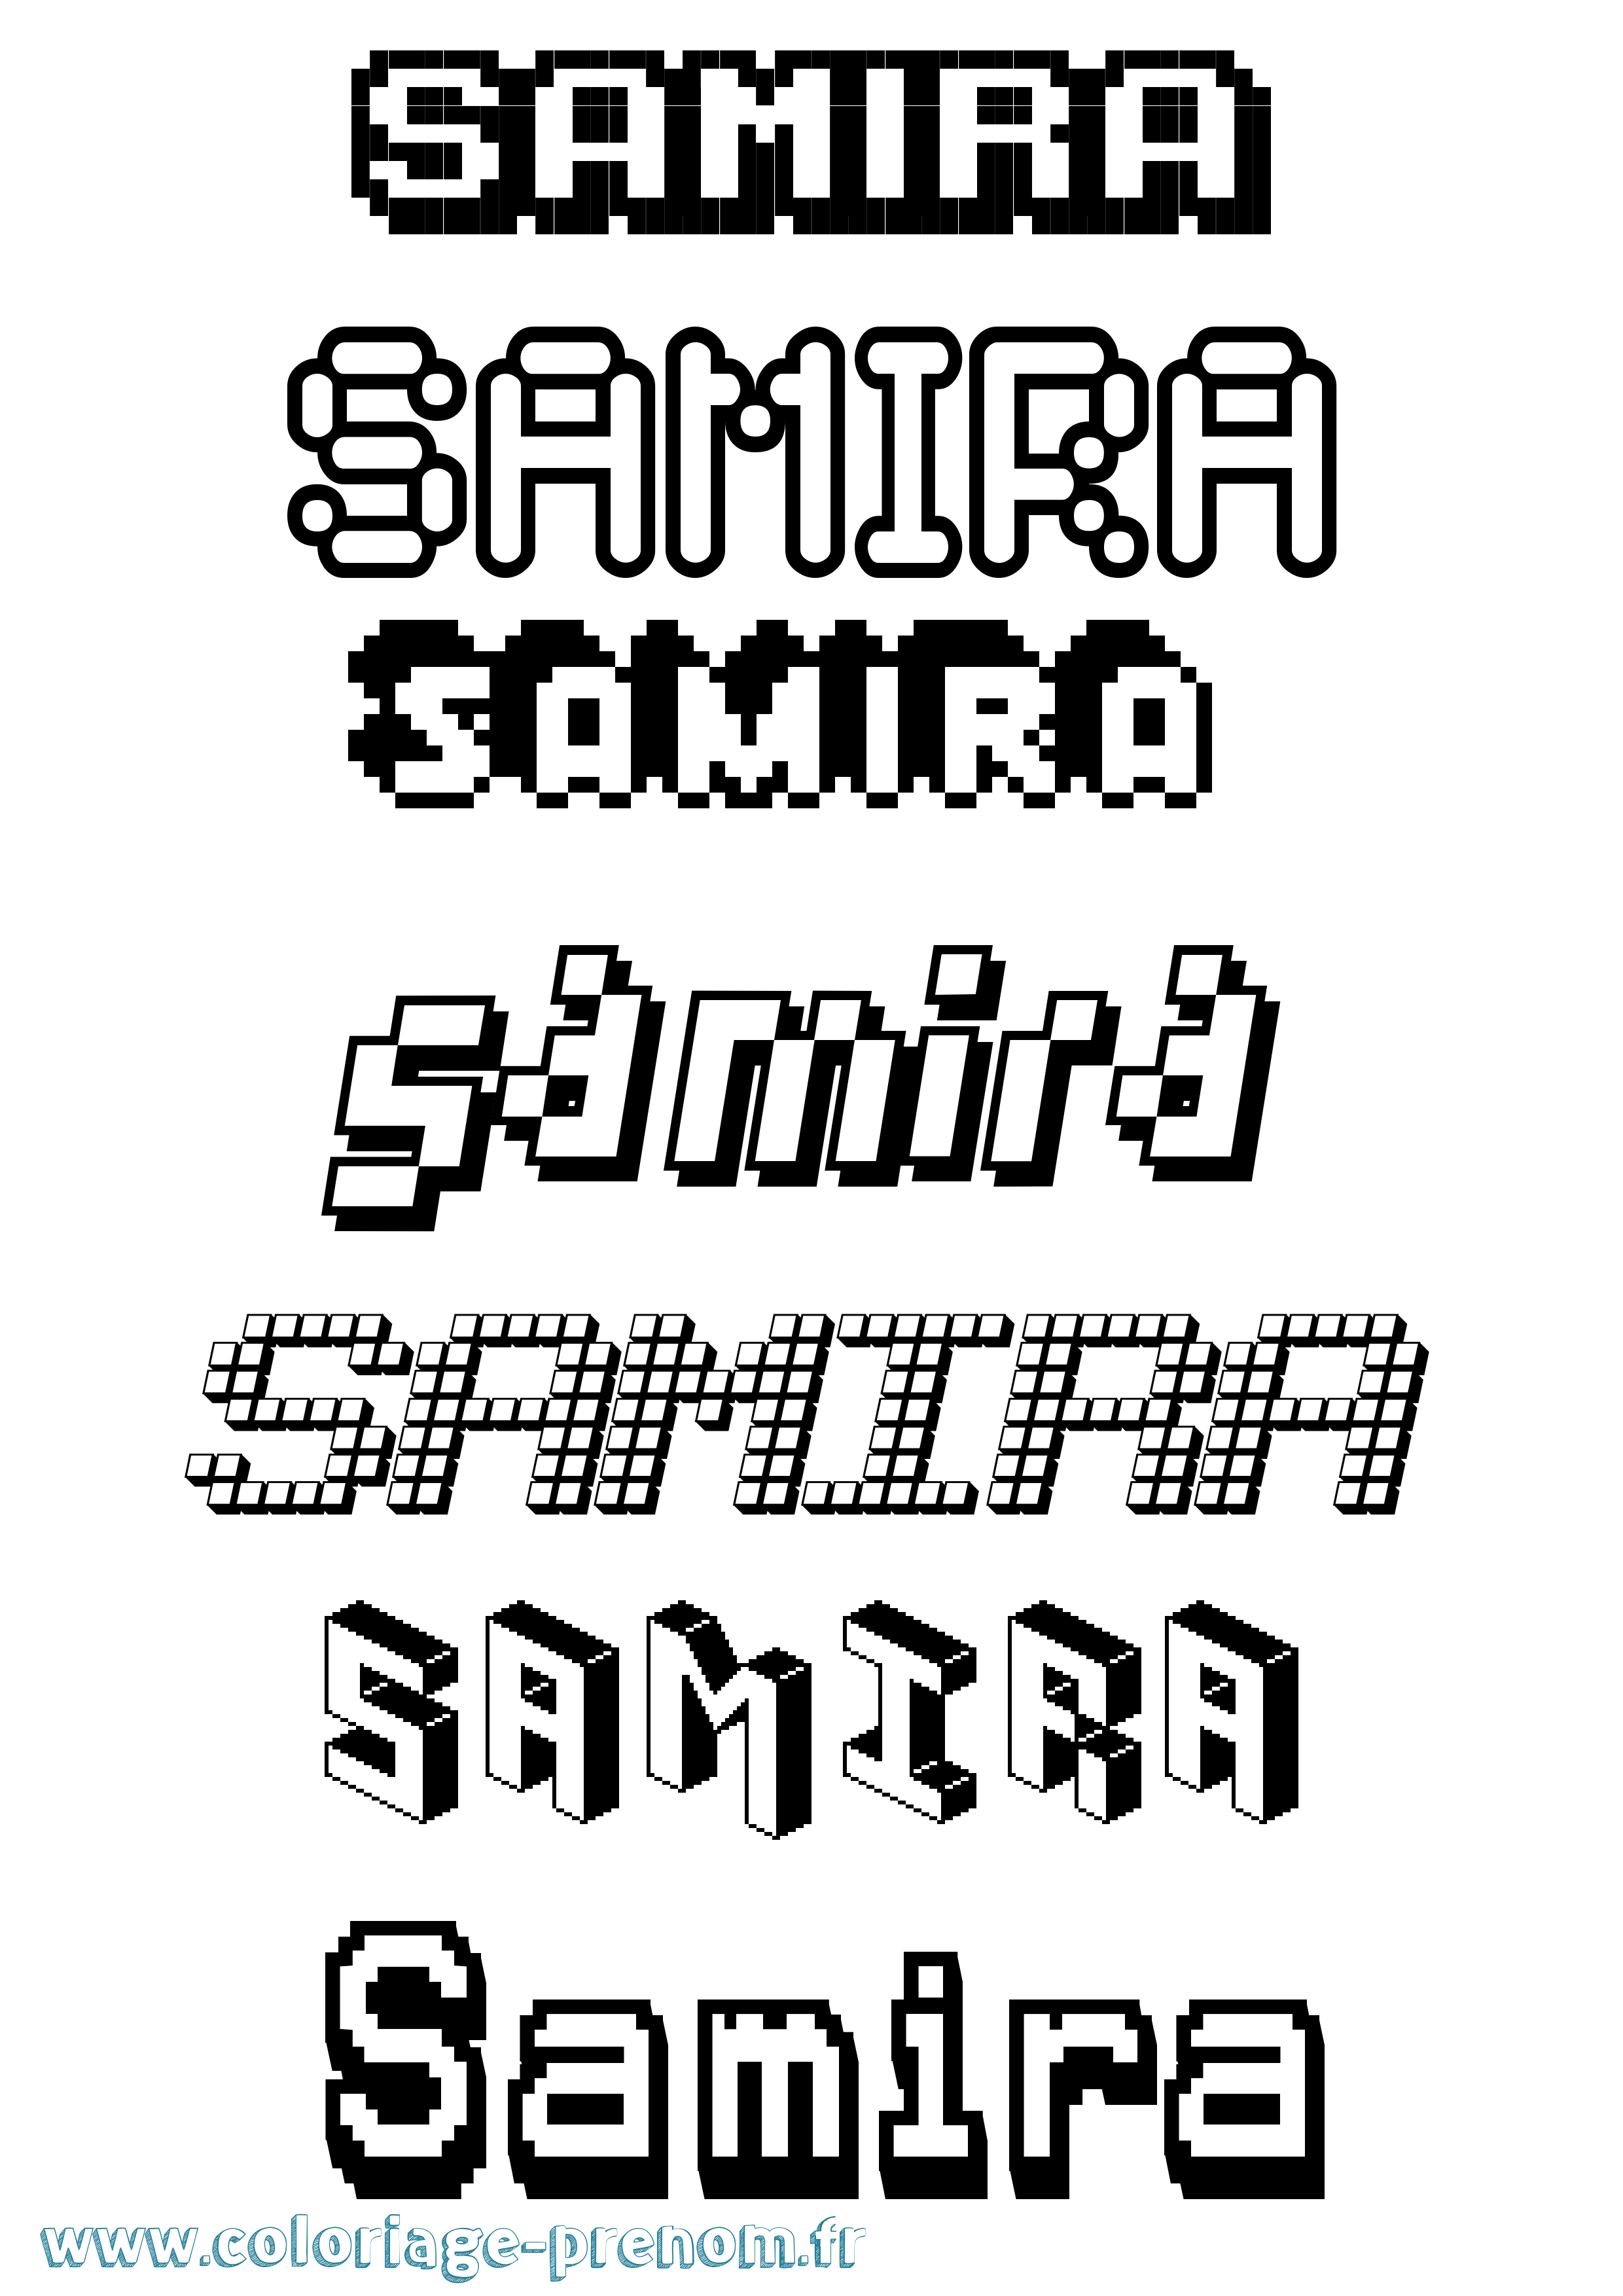 Coloriage prénom Samira Pixel